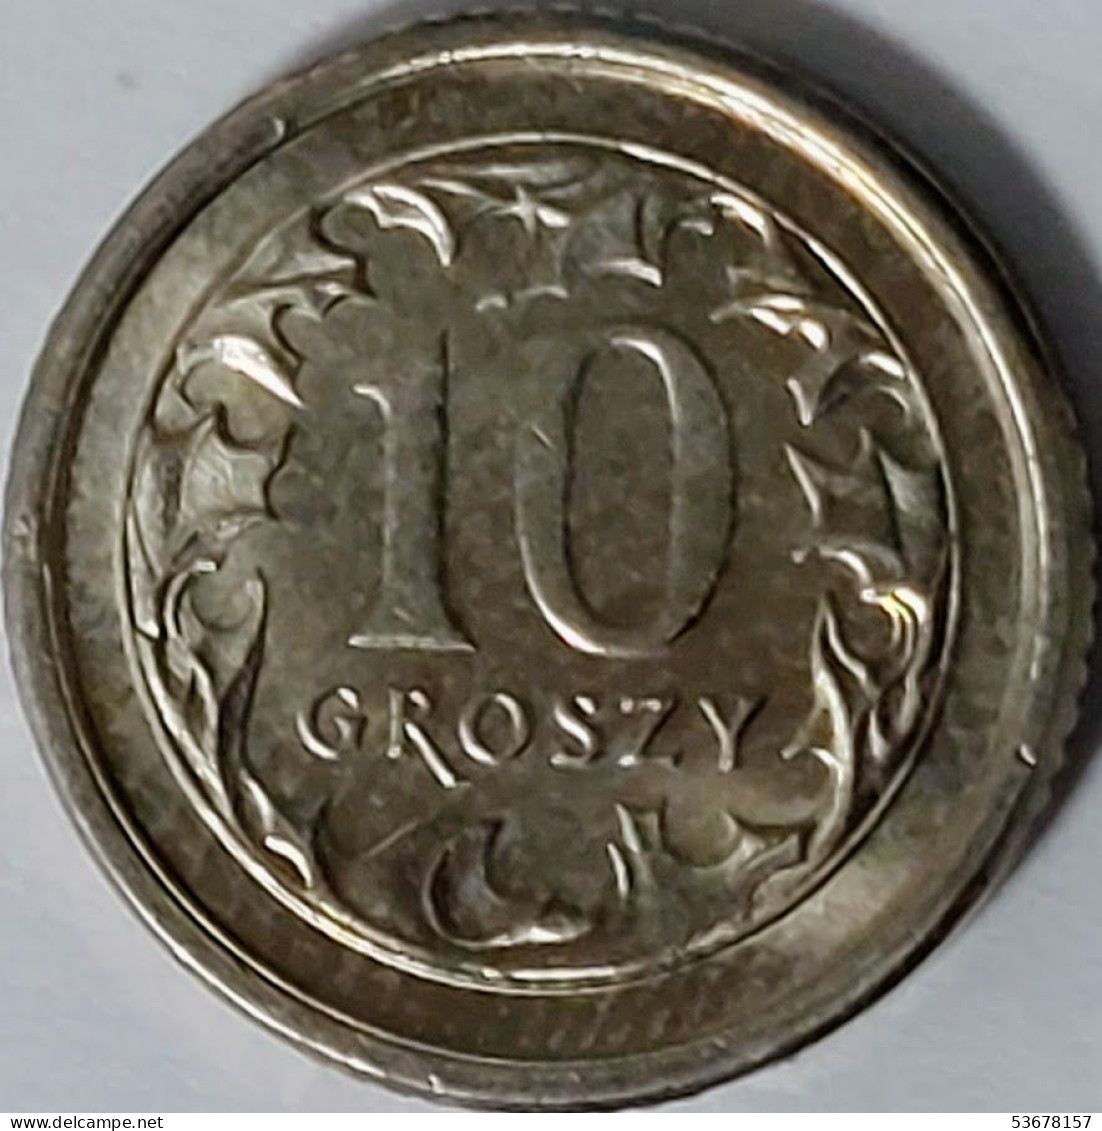 Poland - 10 Groszy 2000, Y# 279 (#2009) - Pologne